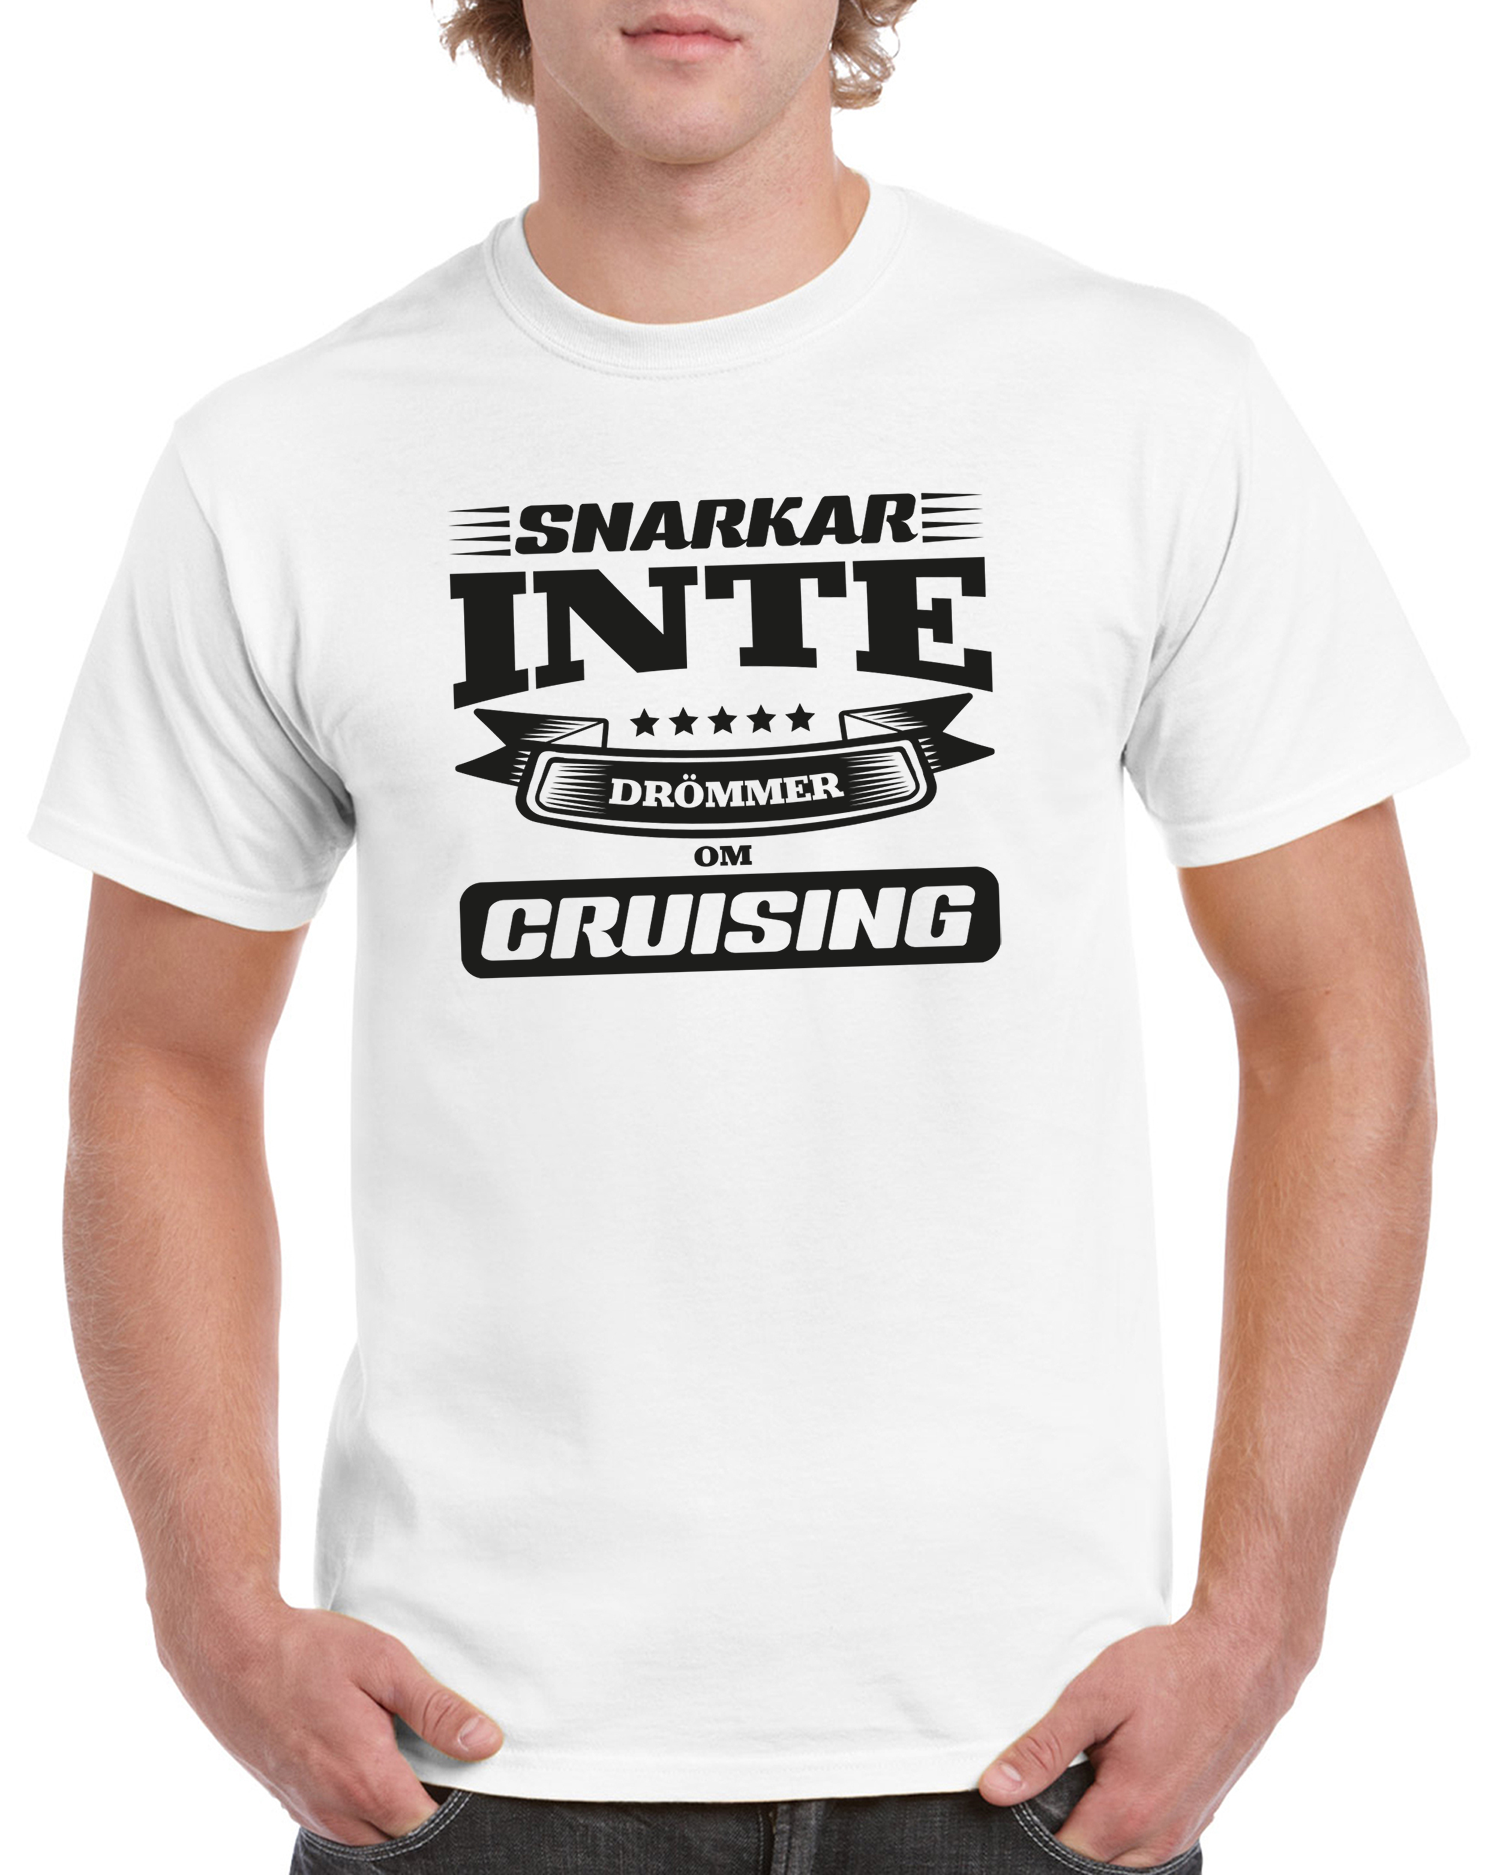 T-shirt herr: Snarkar inte drömmer om cruising